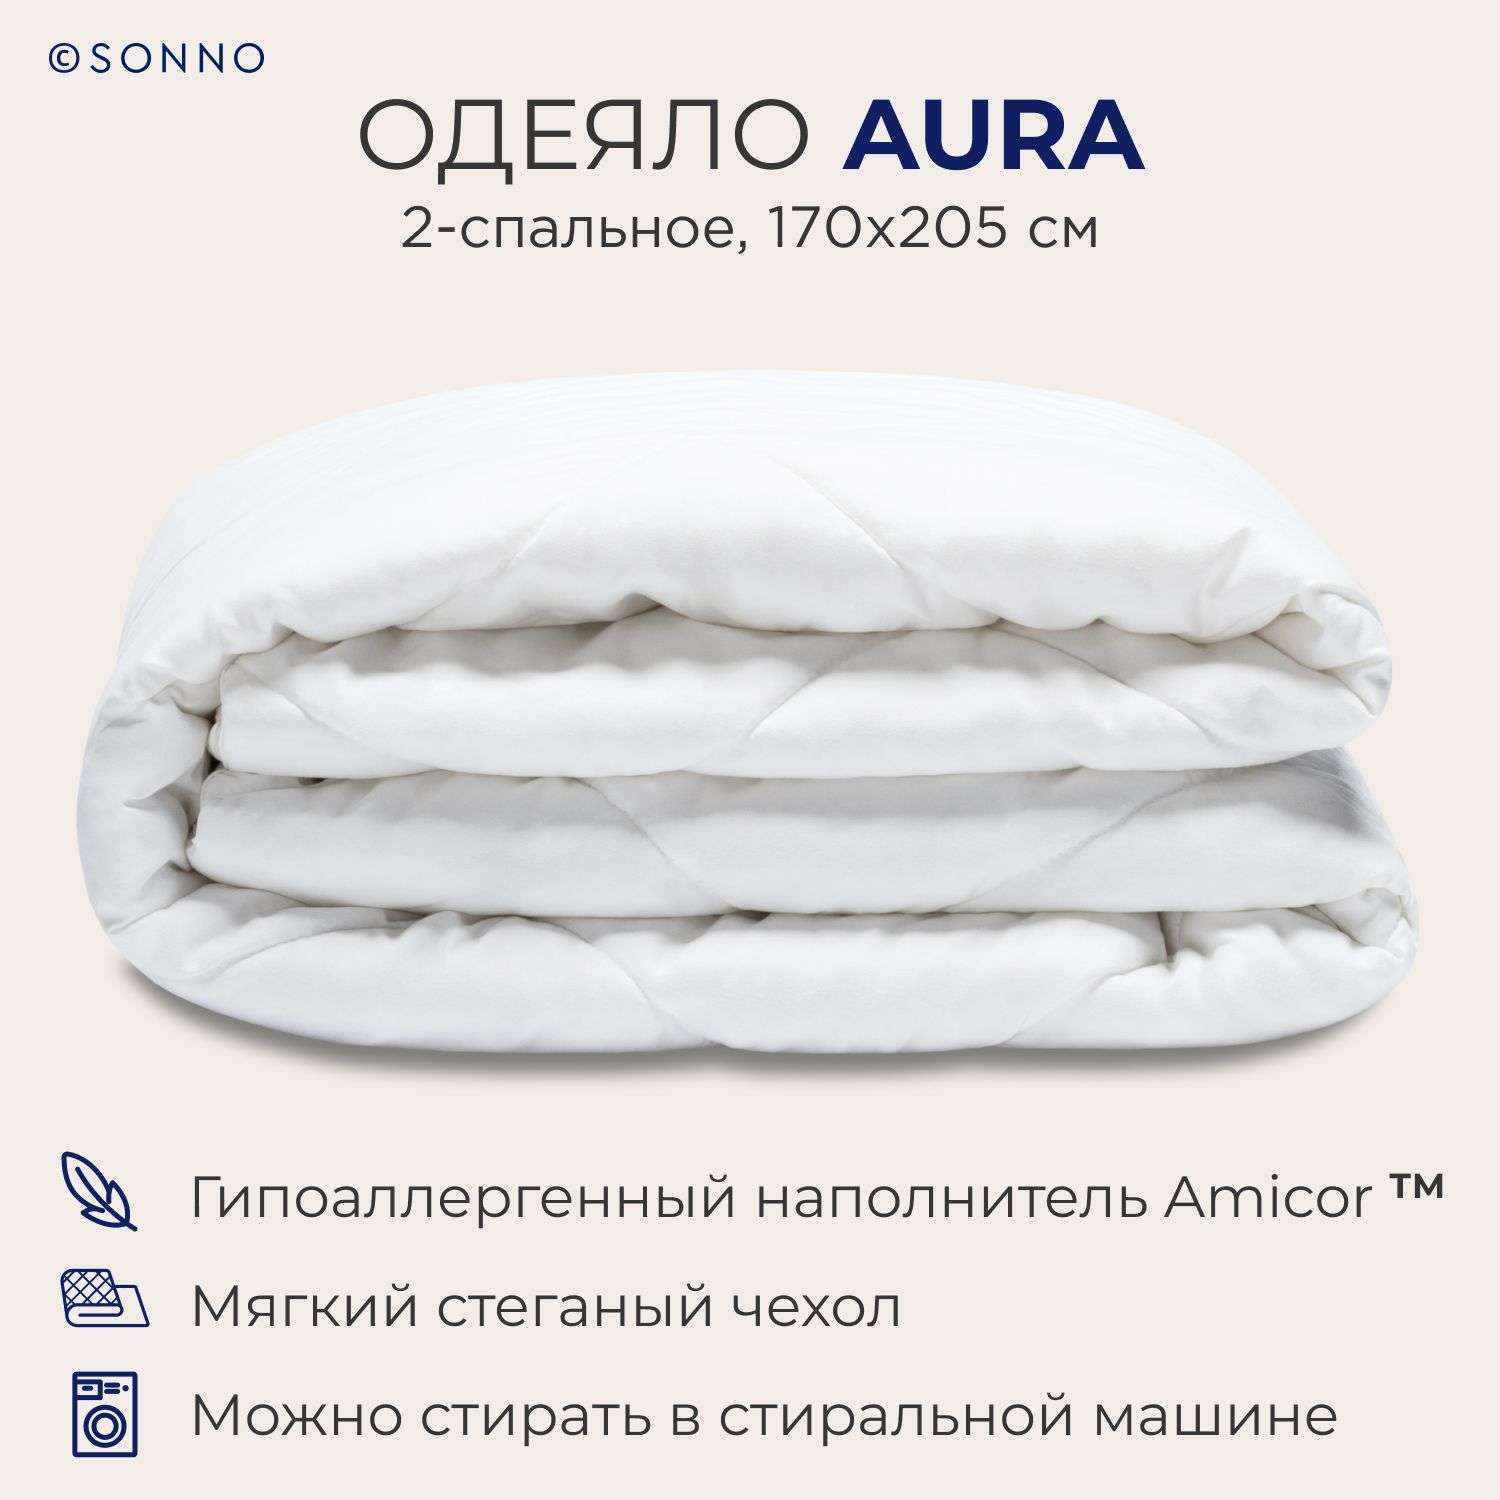 Одеяло SONNO AURA 2-сп. 170х205 Amicor TM Цвет Ослепительно белый - фото 1